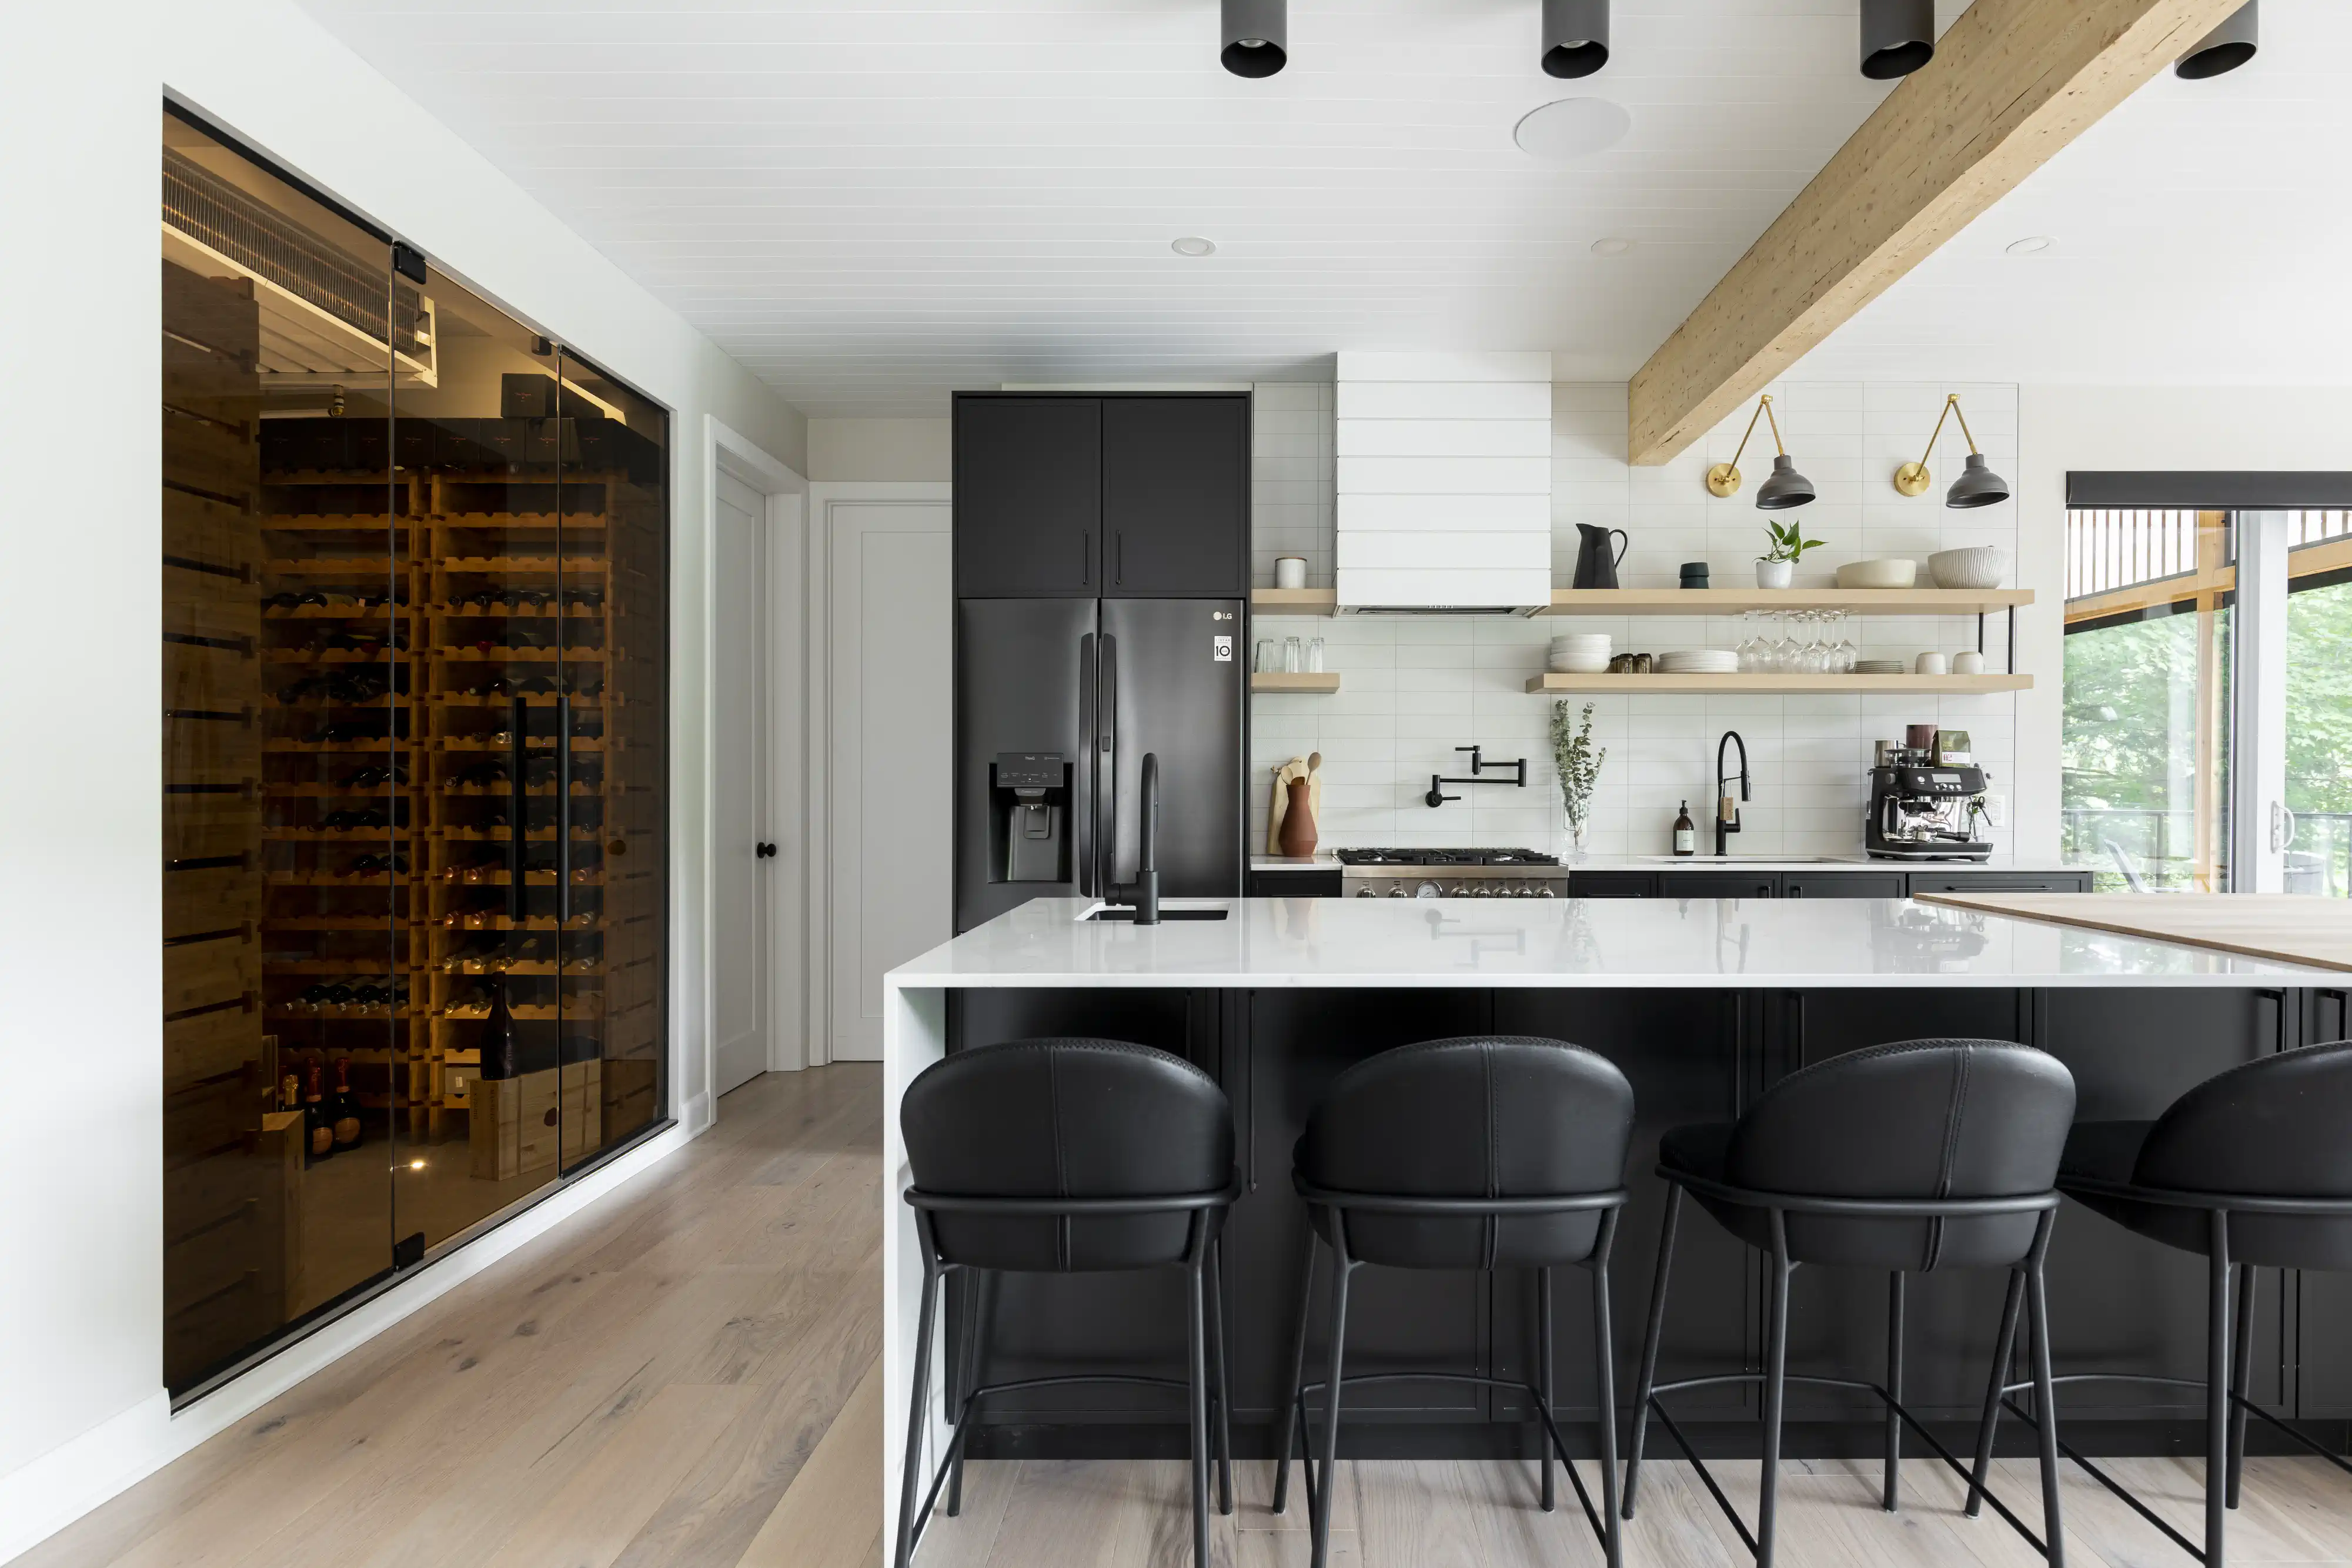 Une cuisine moderne avec une cave à vin et un schéma de couleurs noir et blanc, intérieur signé Sarah Brown Design